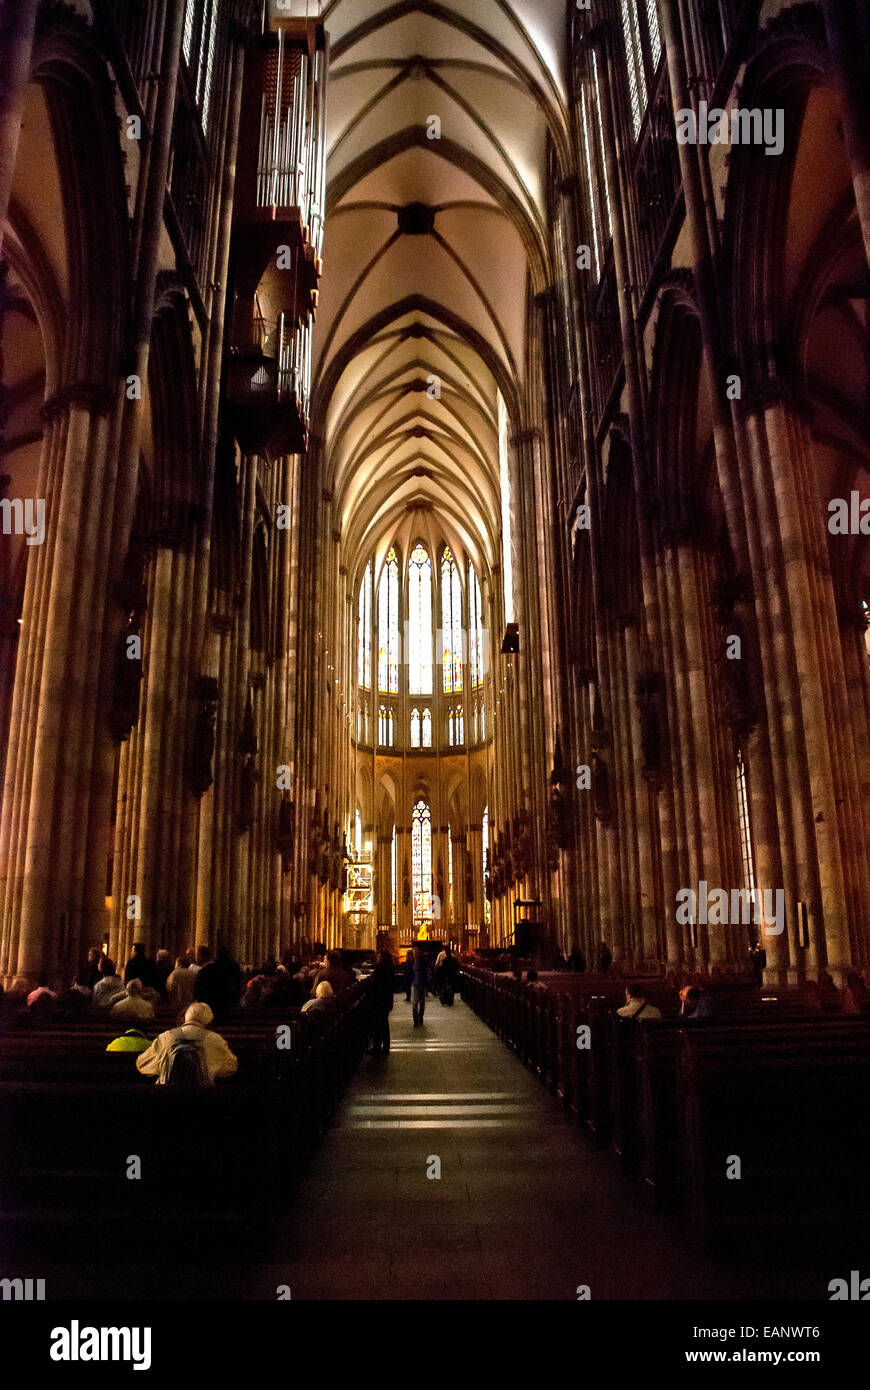 Pessoas sentadas rezando dentro da Catedral de Colônia. / People praying inside the Cologne Cathedral. Stock Photo